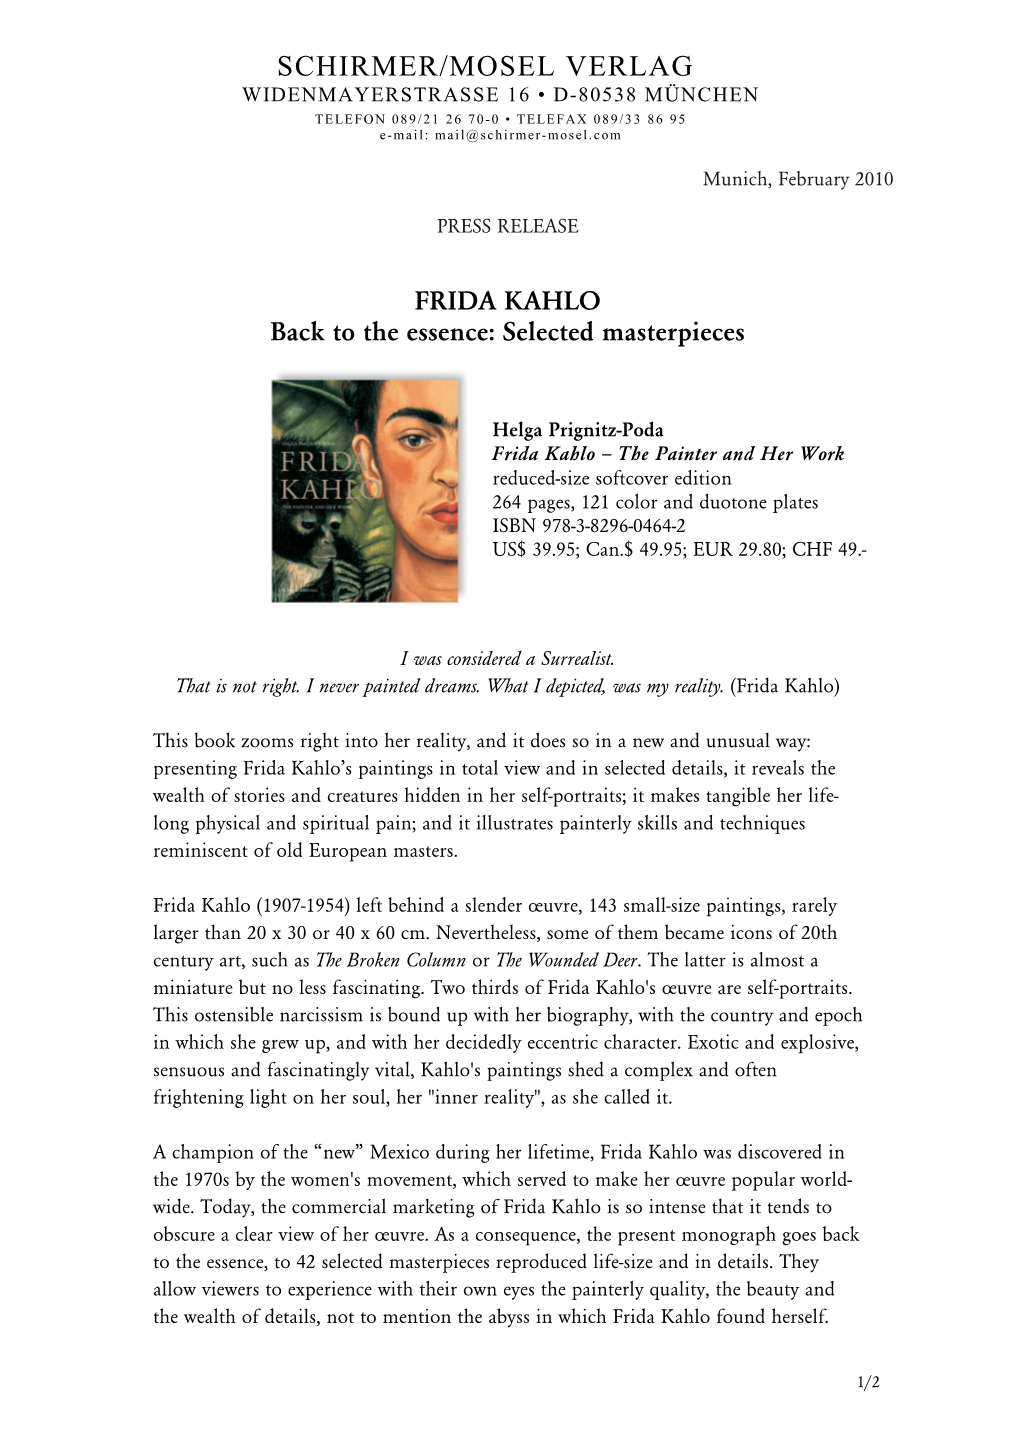 Press Release Frida Kahlothe Painter